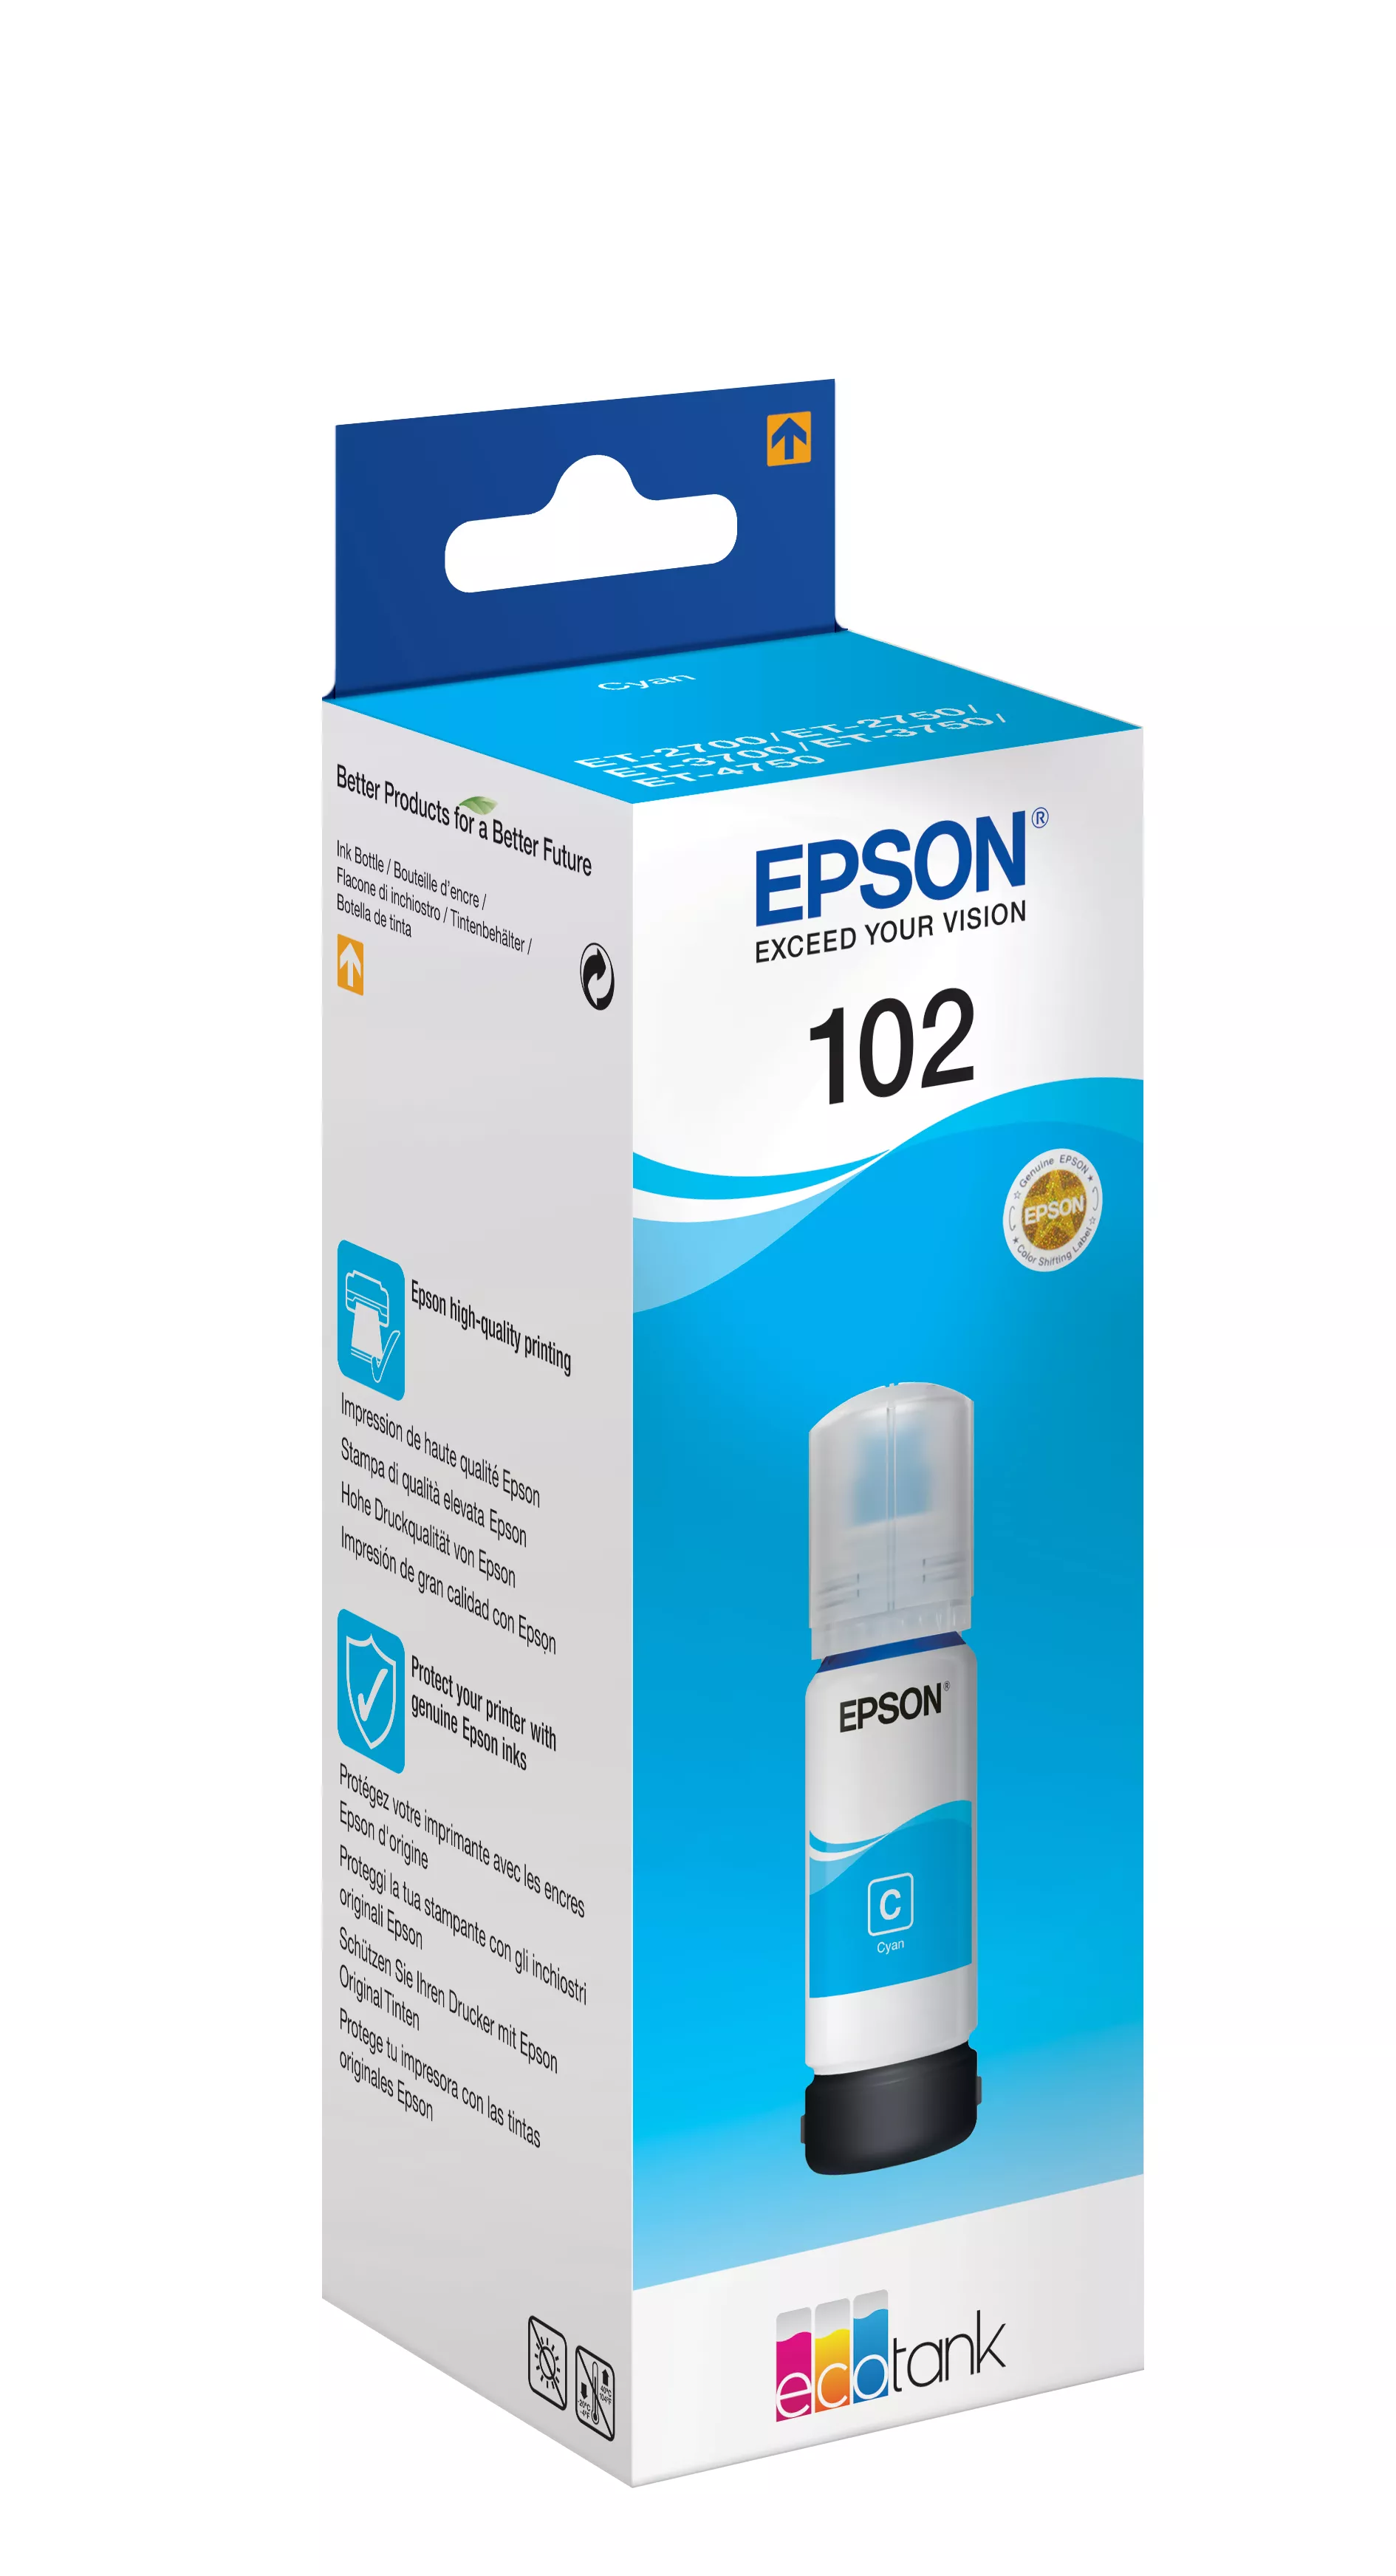 Vente EPSON 102 EcoTank Cyan ink bottle Epson au meilleur prix - visuel 2